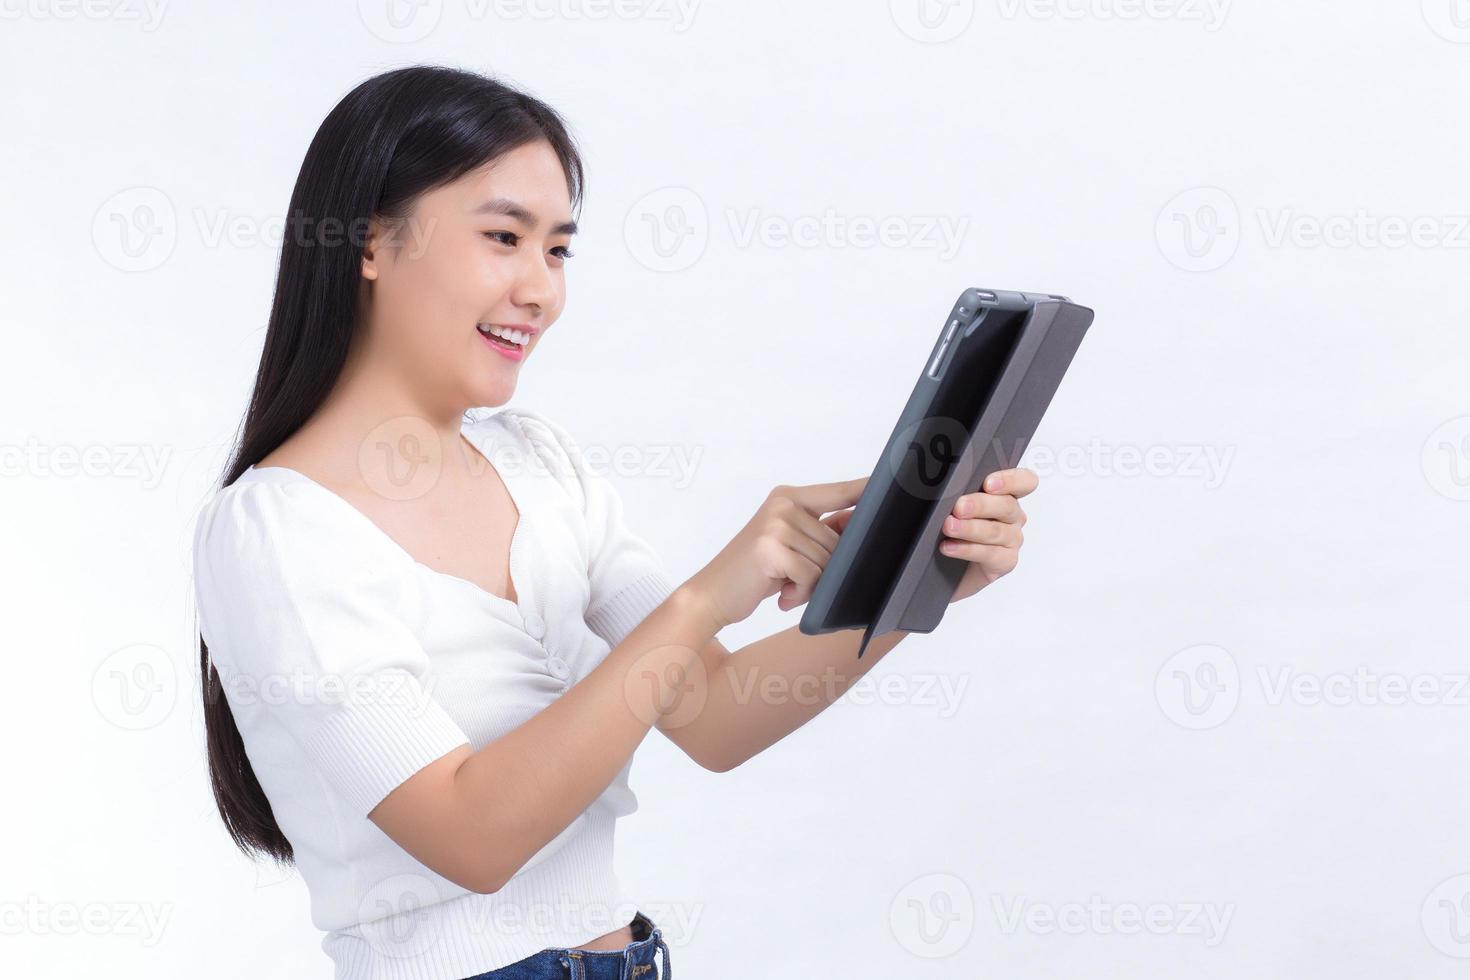 image de beaux étudiants asiatiques utilisent un téléphone tablette avec plaisir sur fond blanc photo